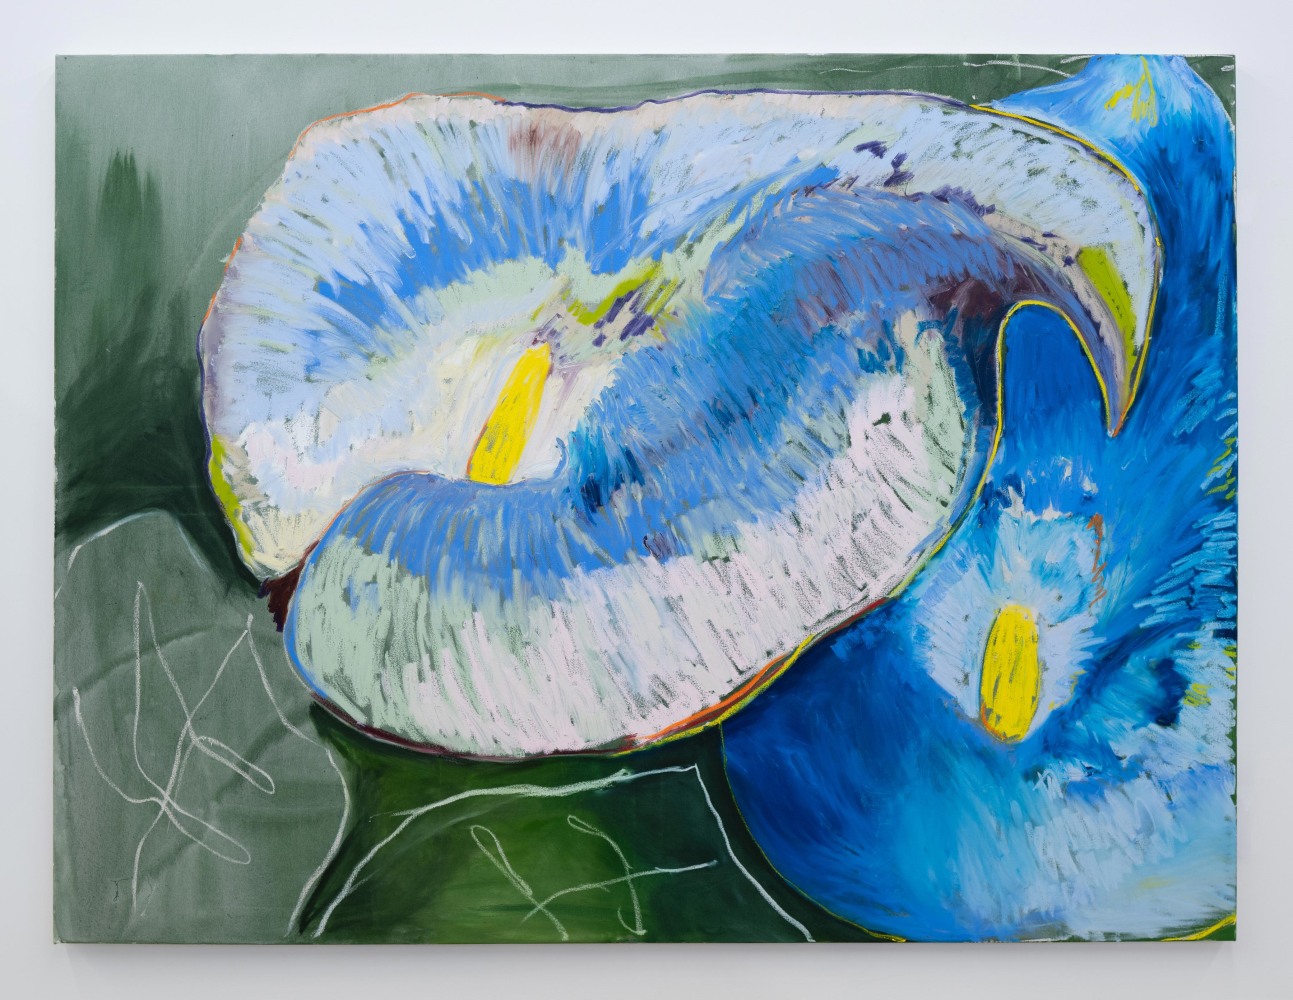 Codi Barbini
Callas in blue, 2023
Acrylic and oil on canvas
72h x 96w x 1.50d in
182.88h x 243.84w x 3.81d cm